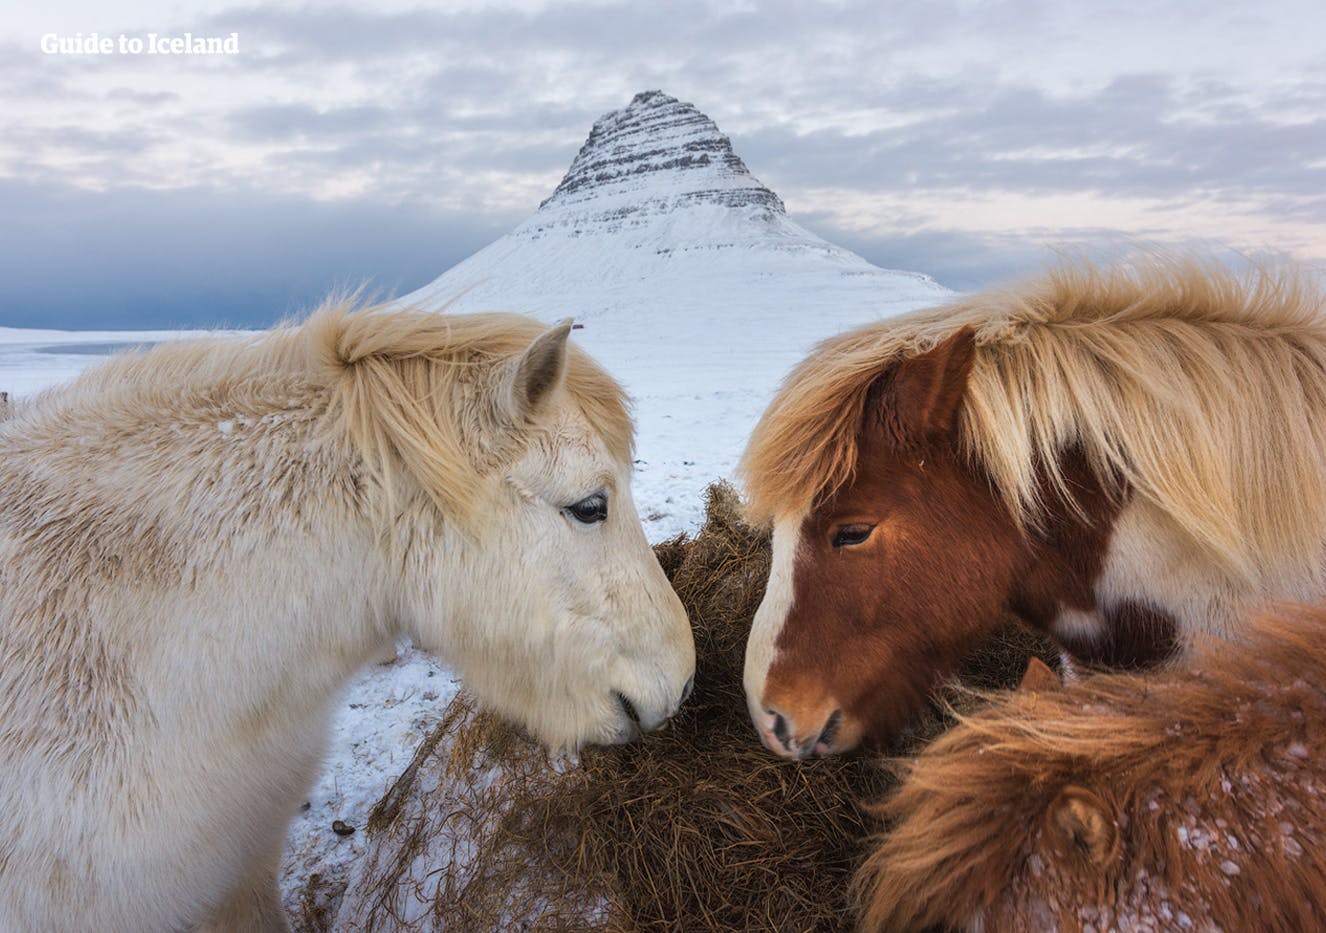 Isländische Pferde vor dem majestätischen Berg Kirkjufell auf der Halbinsel Snæfellsnes.